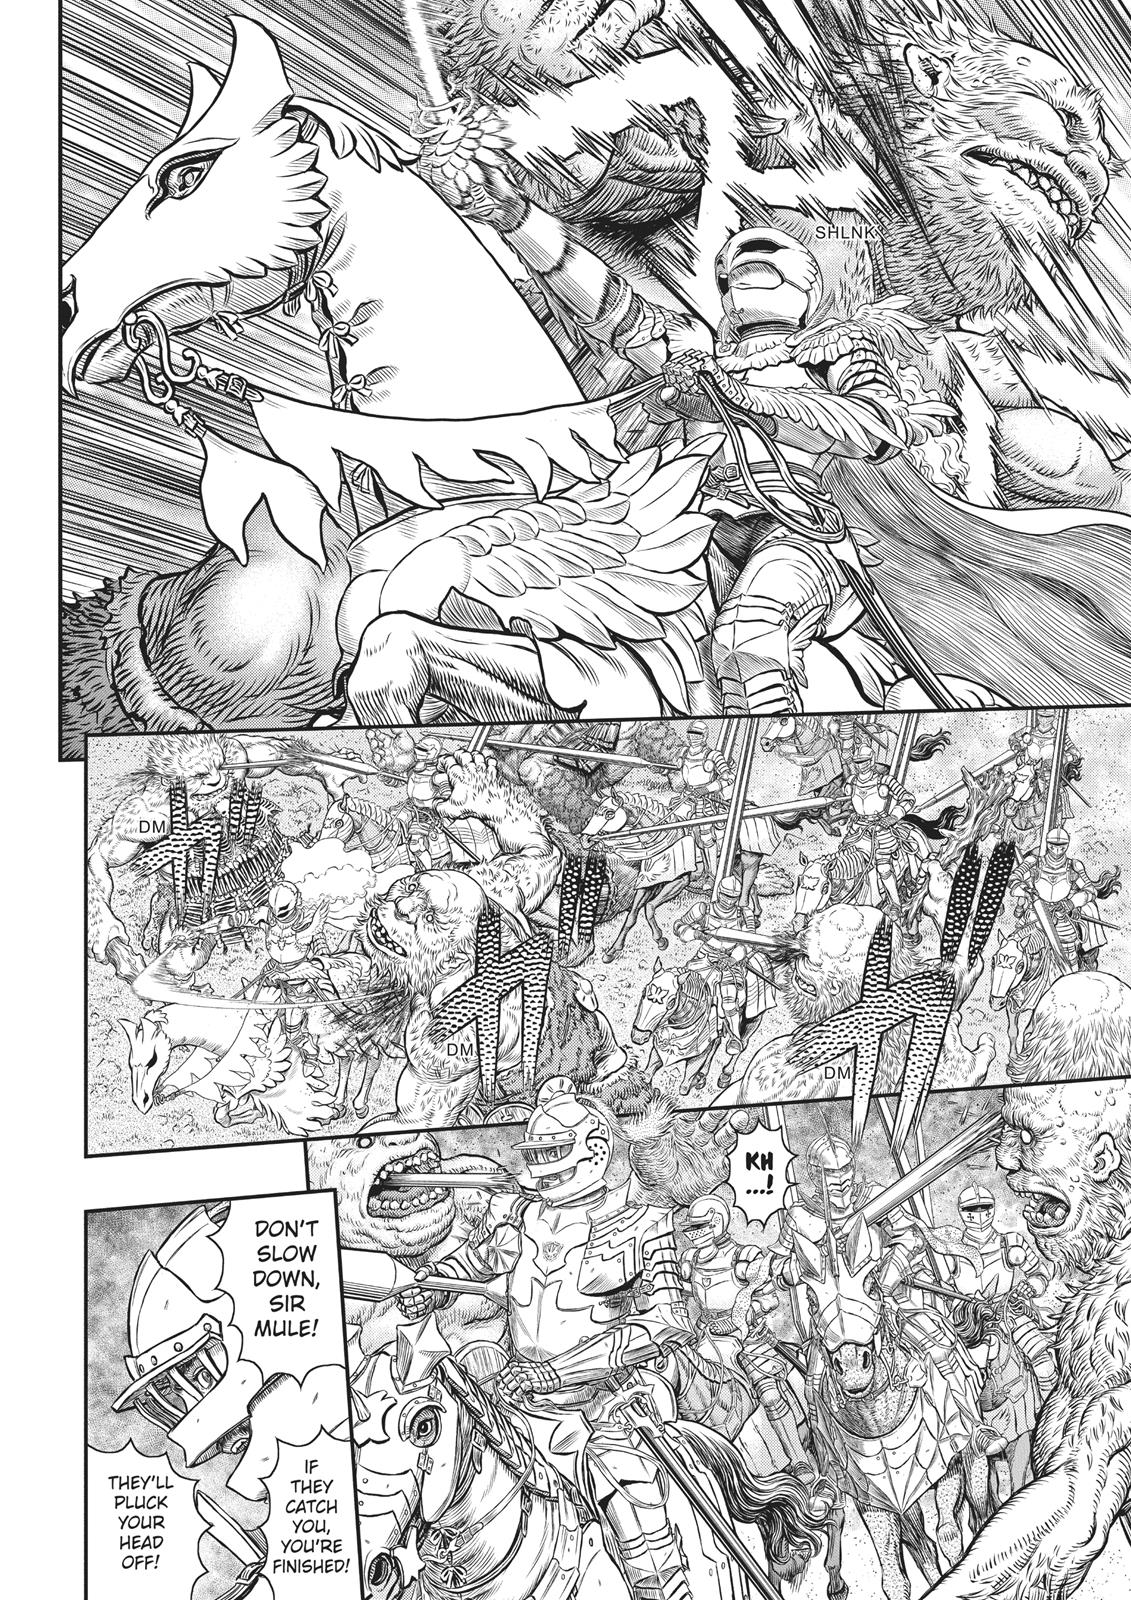 Berserk Manga Chapter 356 image 08